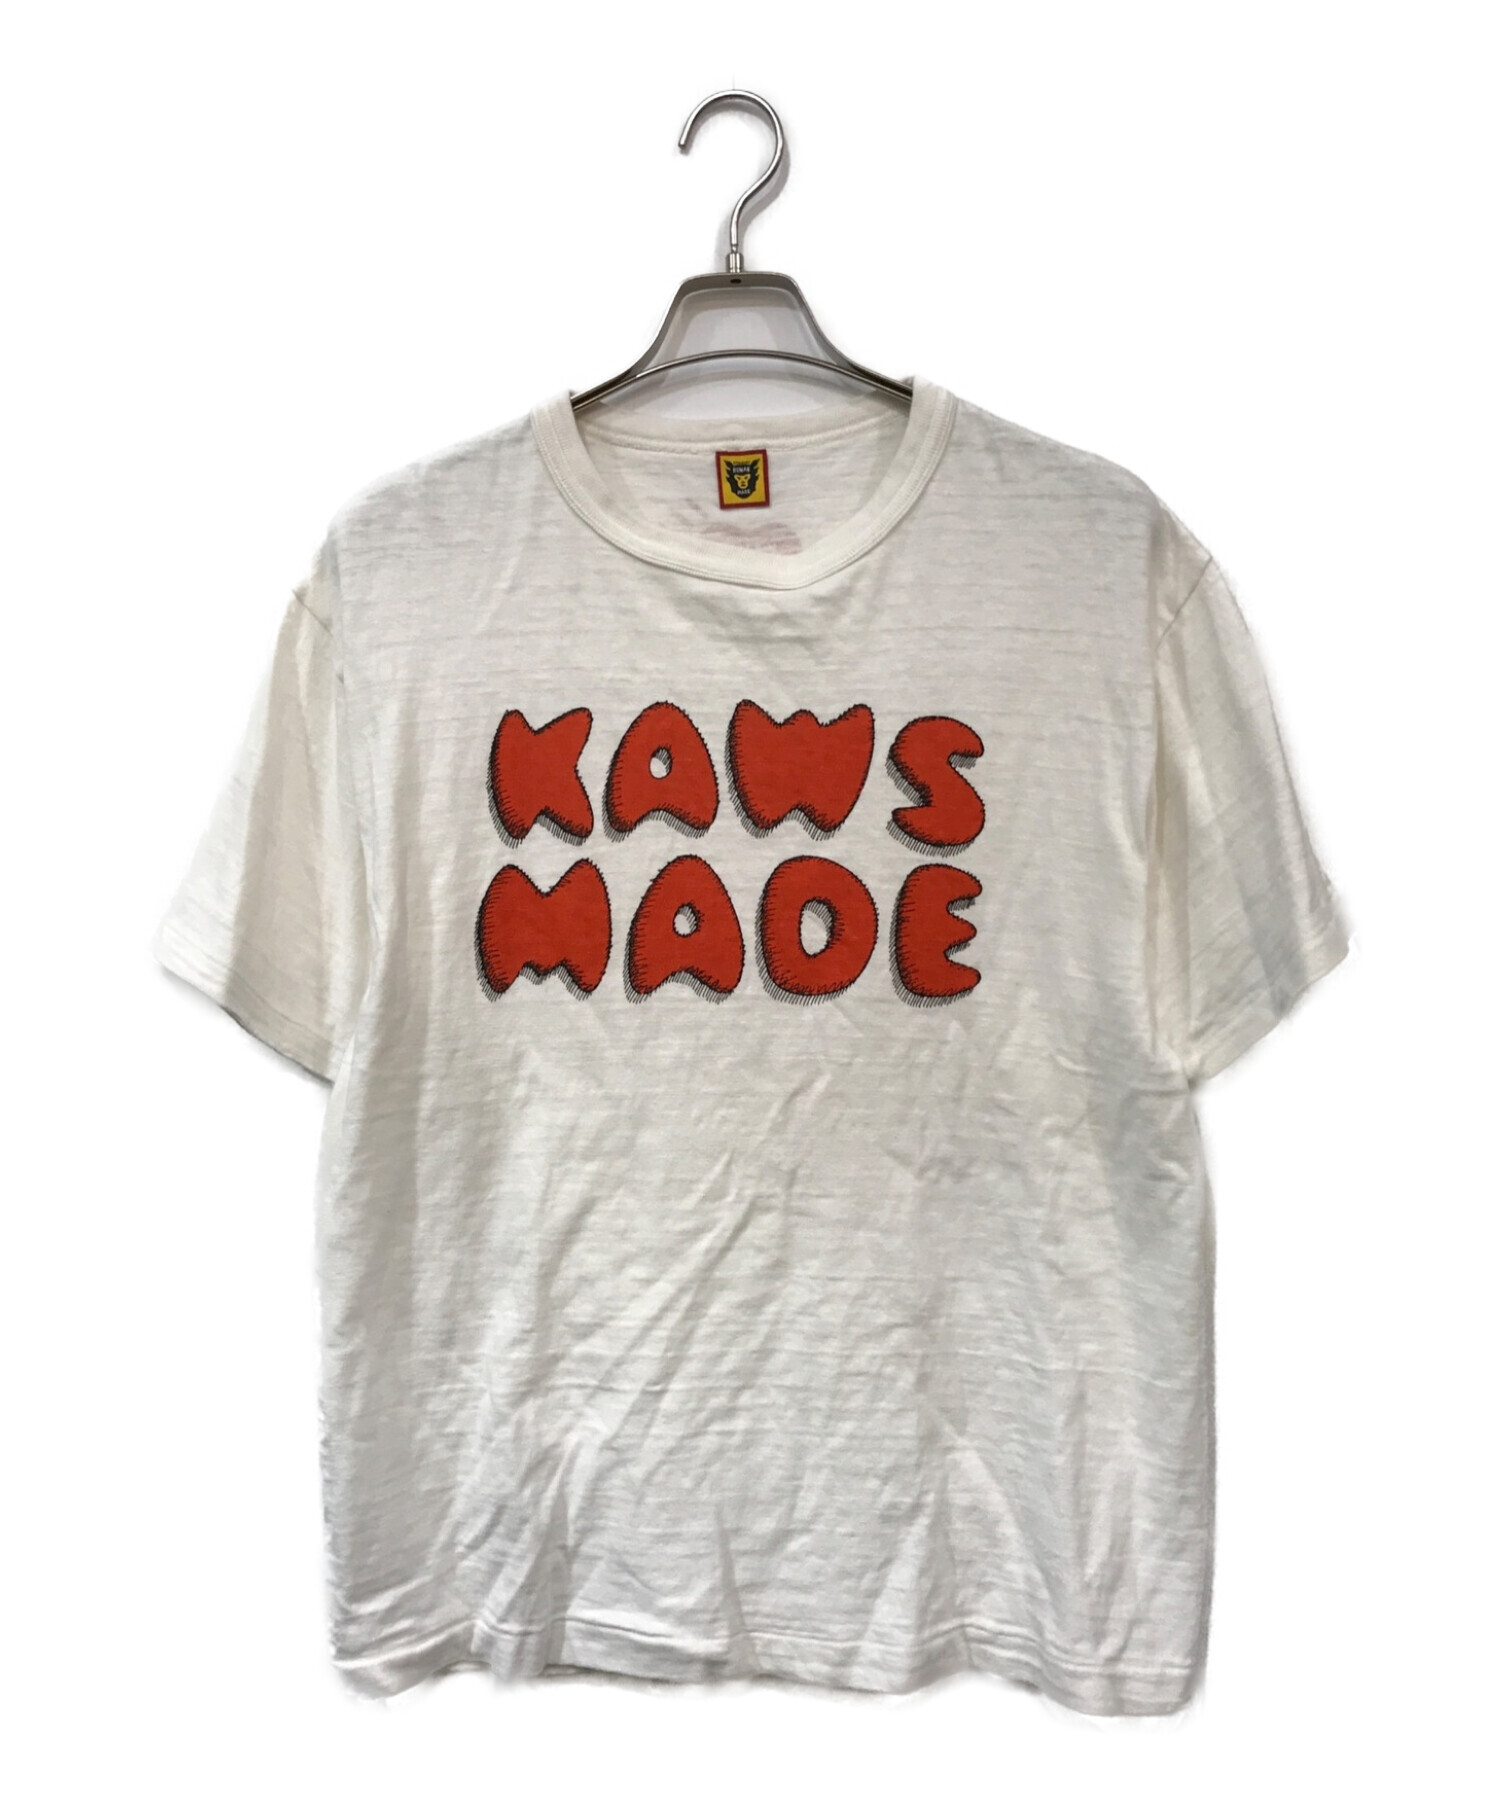 HUMAN MADE×KAWS (ヒューマンメイド×カウズ) コラボプリントTシャツ ホワイト×オレンジ サイズ:L